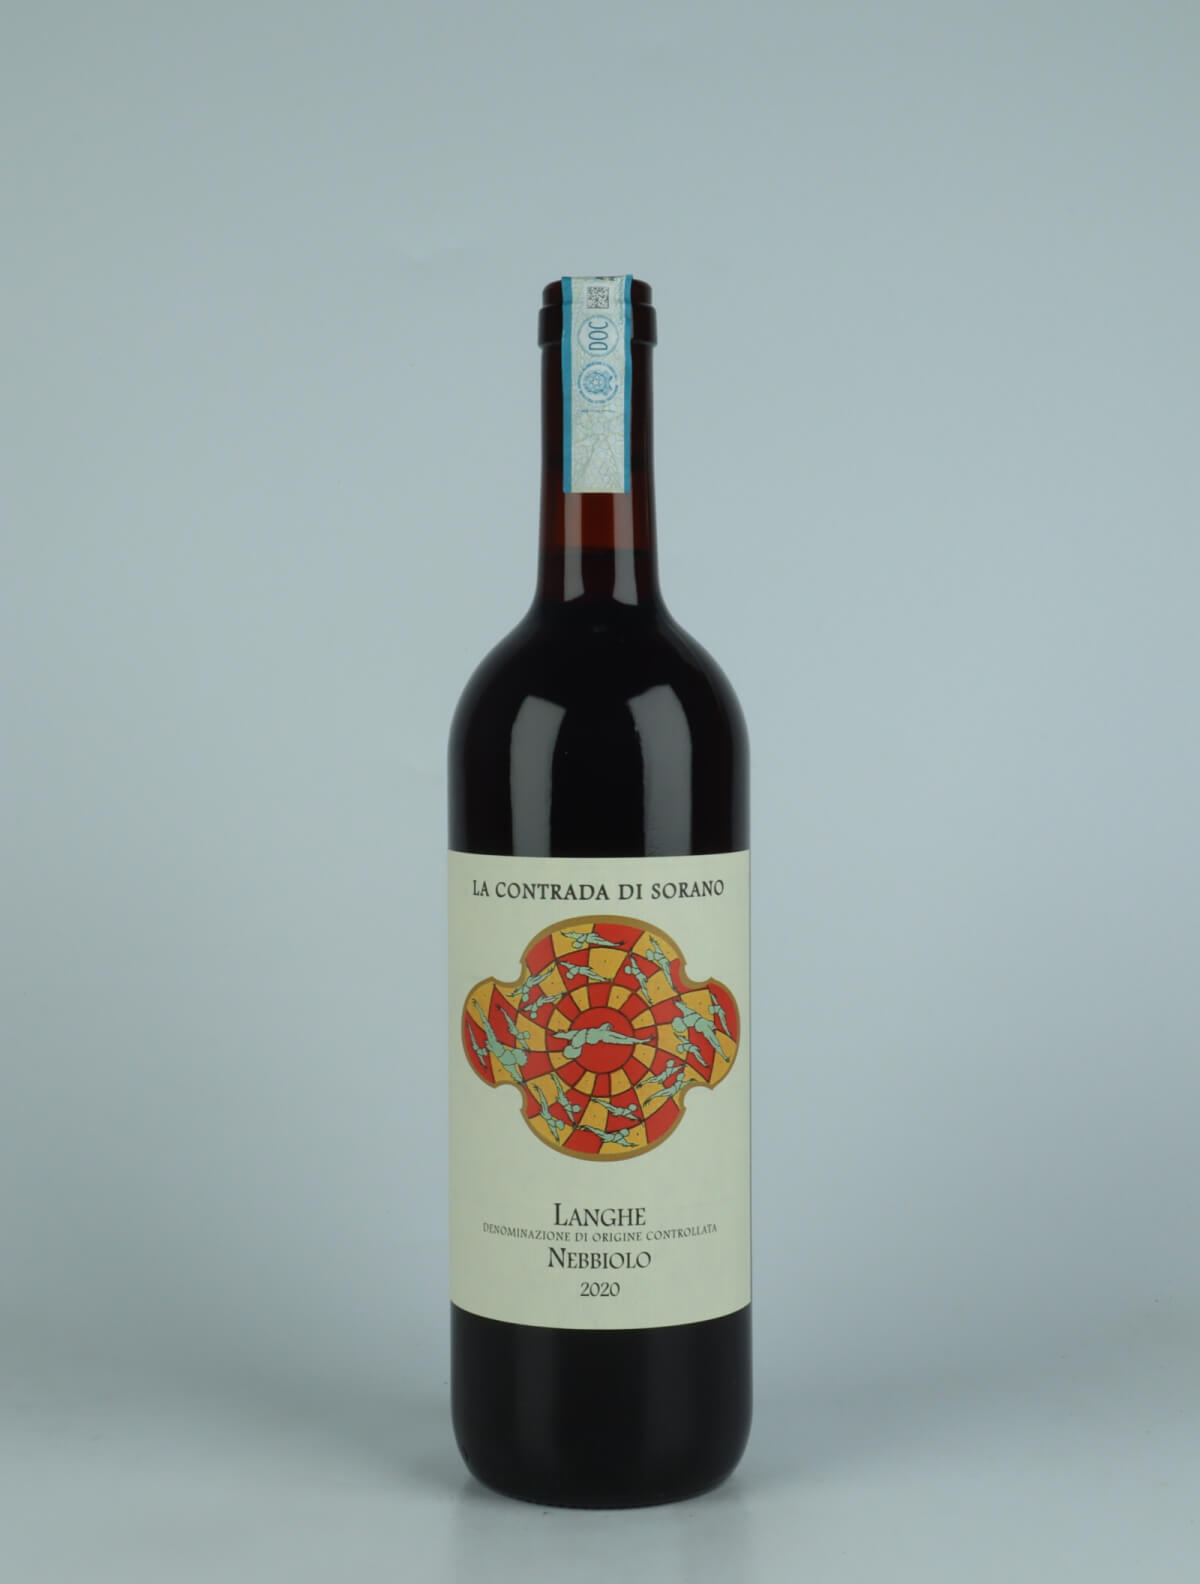 En flaske 2020 Langhe Nebbiolo Rødvin fra La Contrada di Sorano, Piemonte i Italien